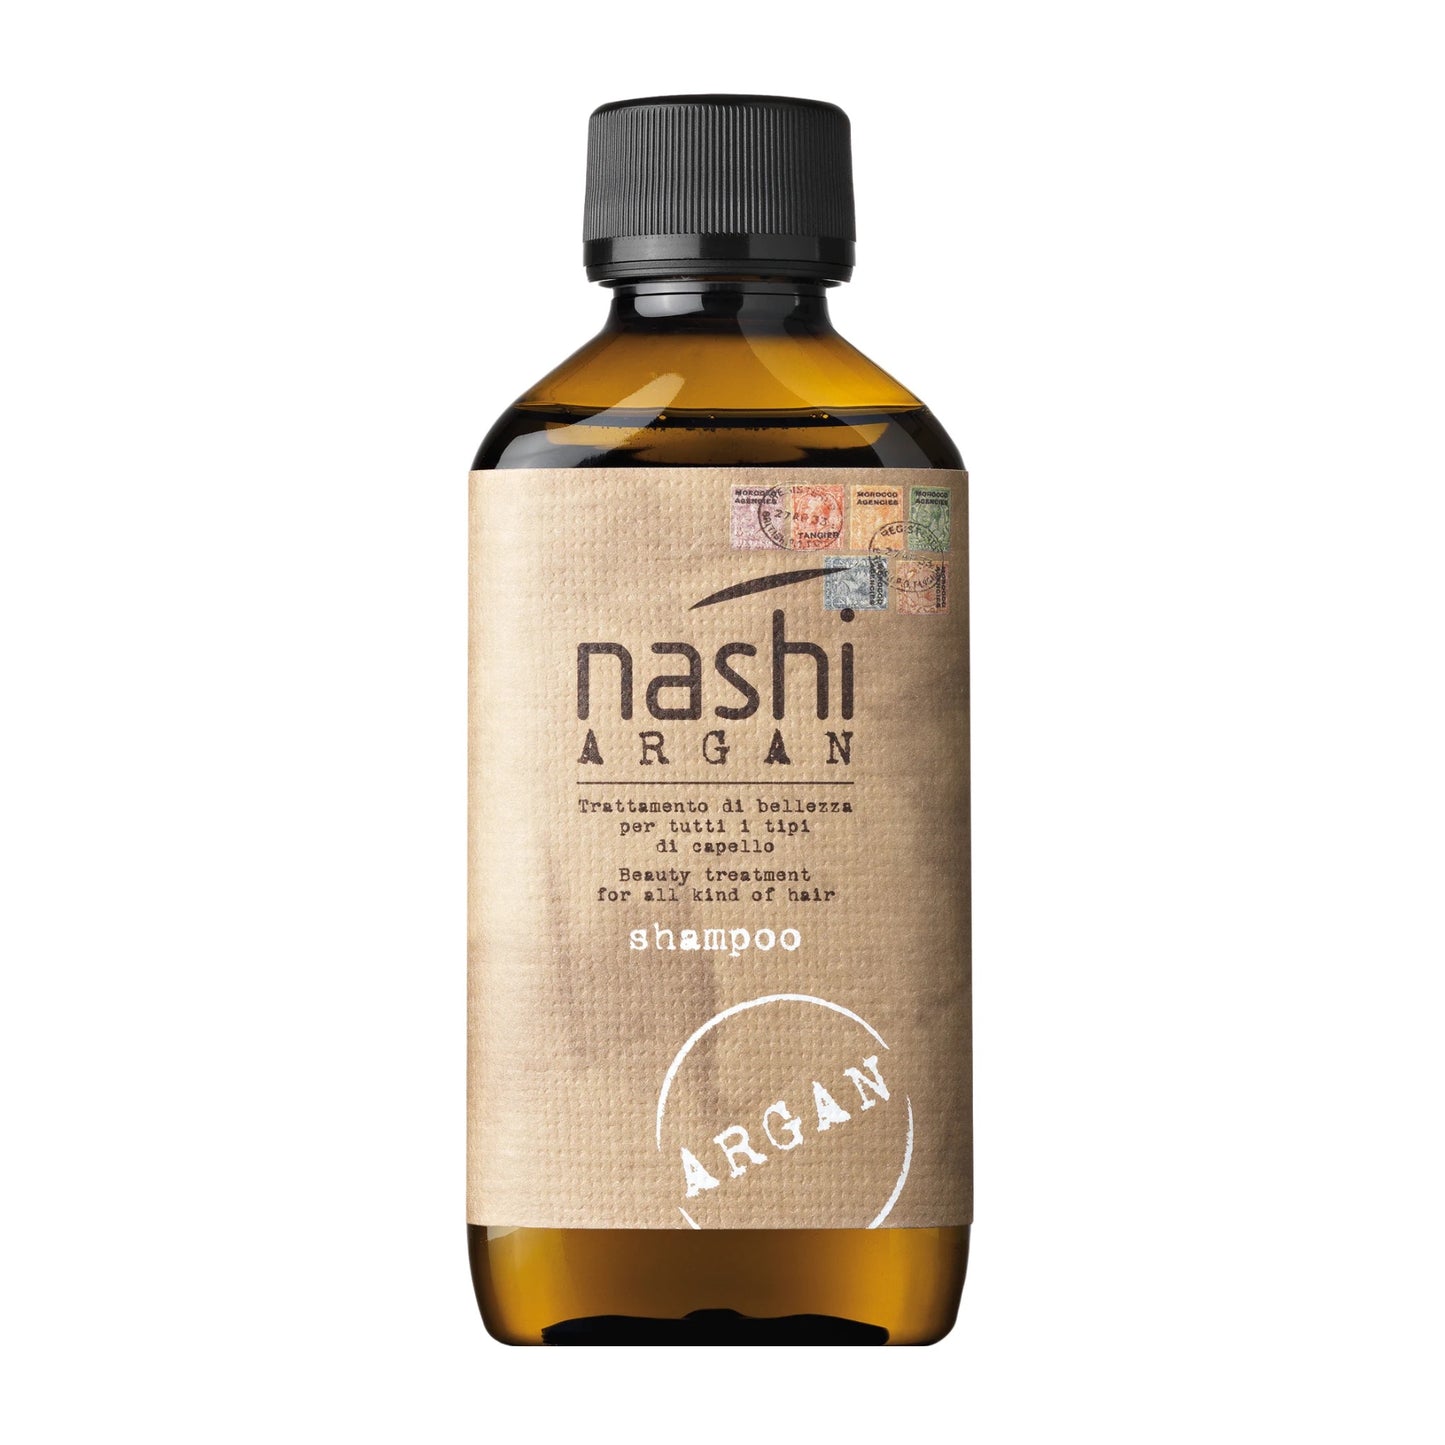 Nashi Argan Shampoo (200ml)